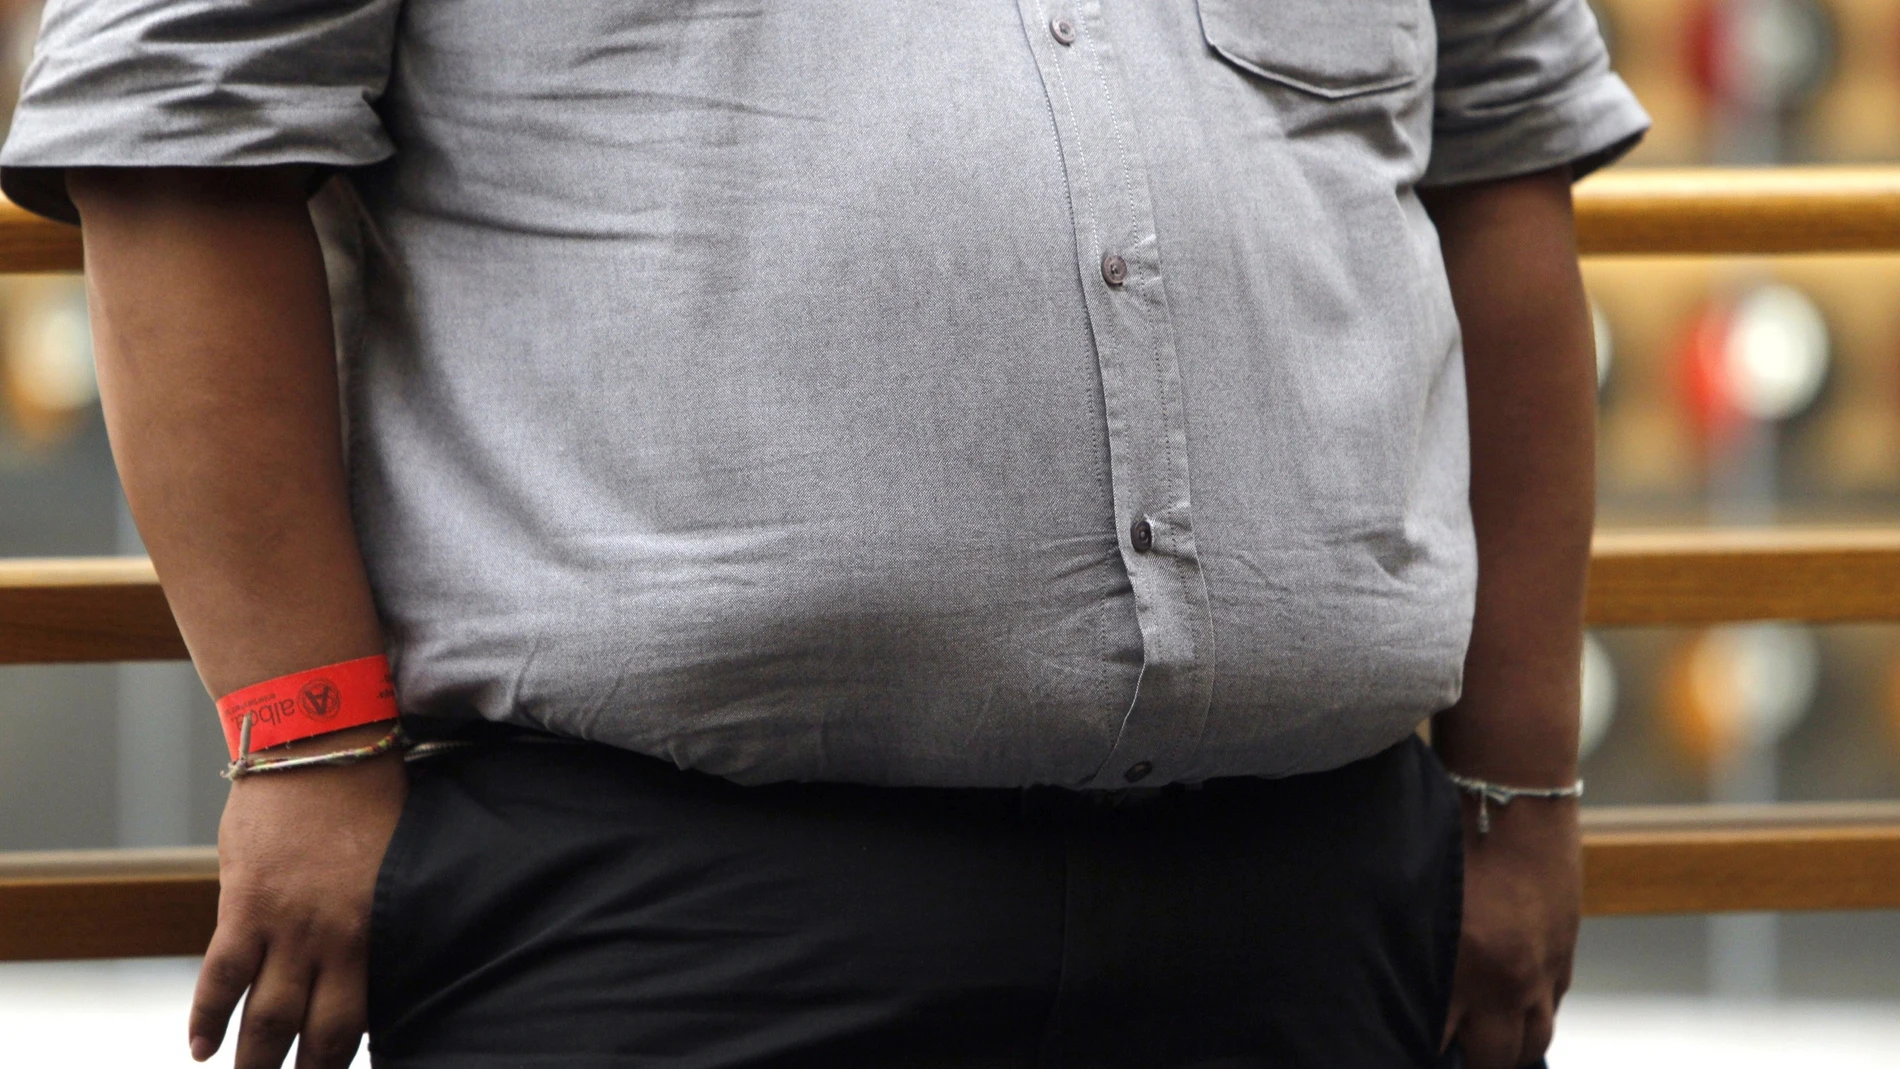 Fotografía de archivo que muestra una persona con obesidad en la calle.